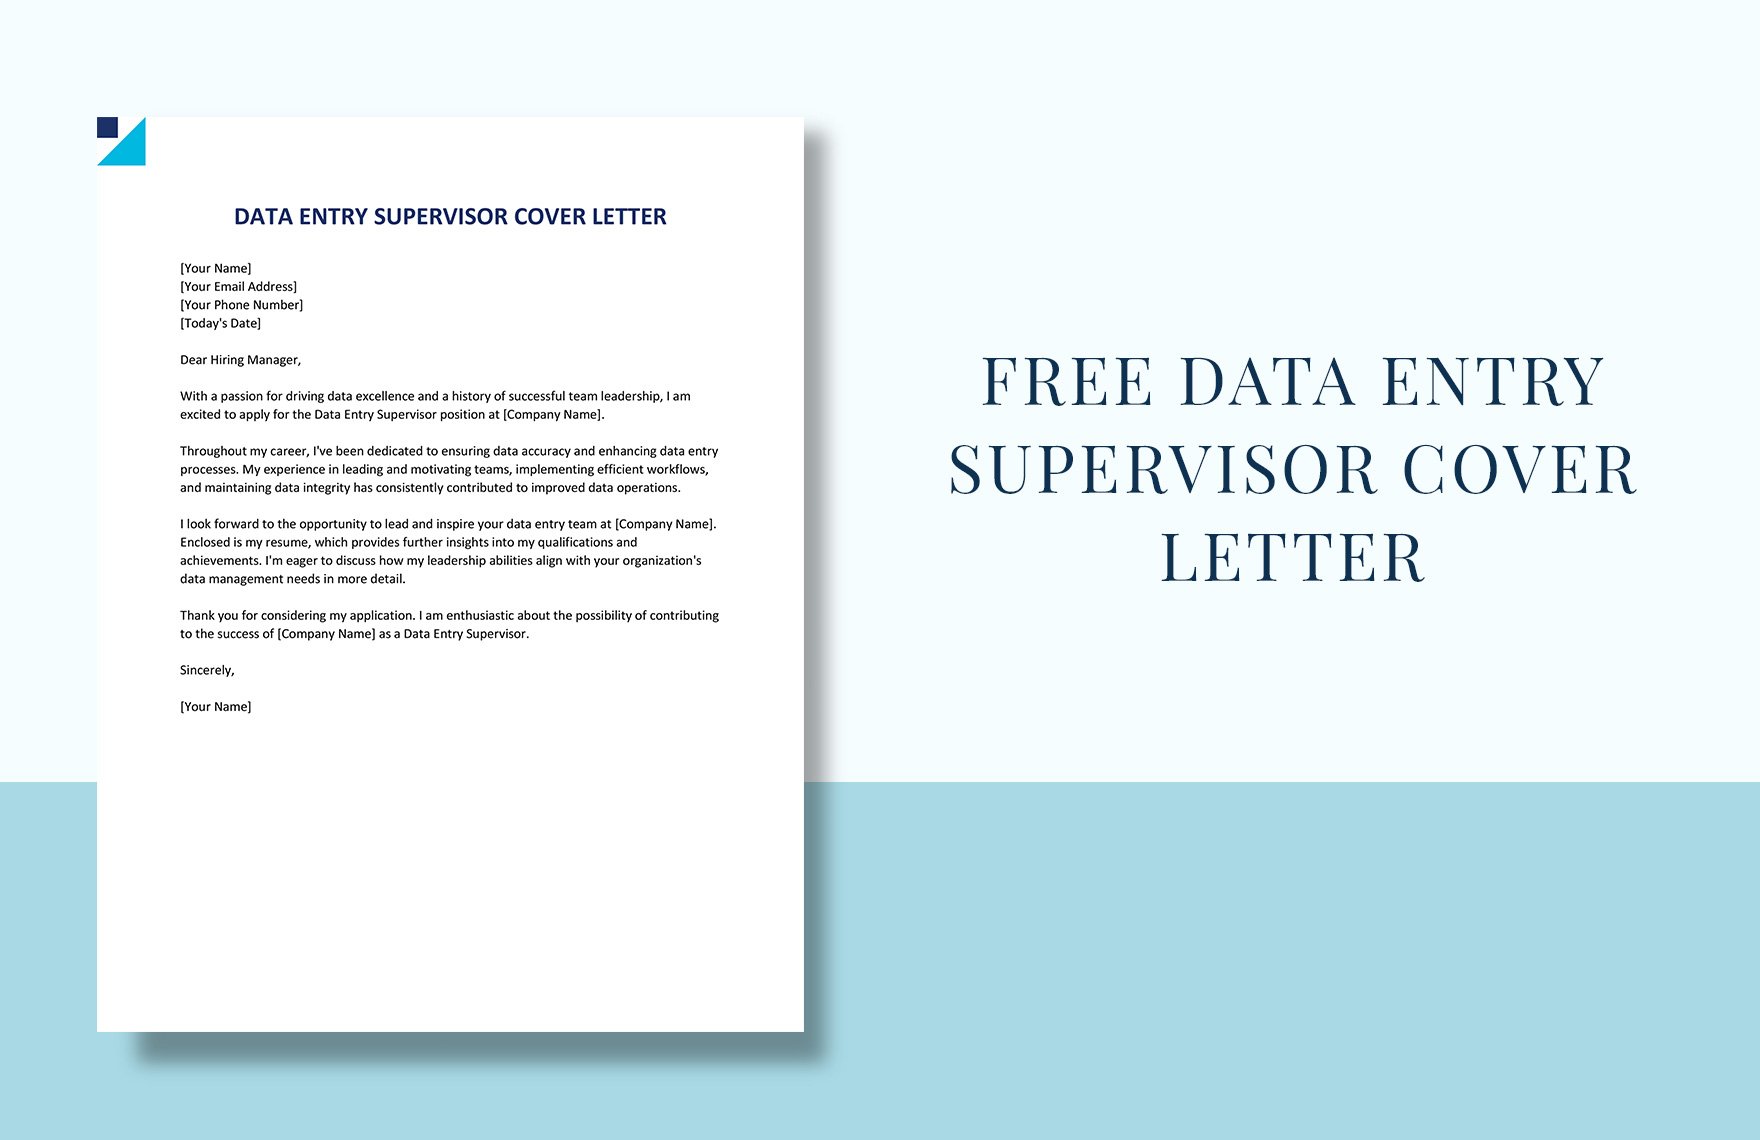 Data Entry Supervisor Cover Letter